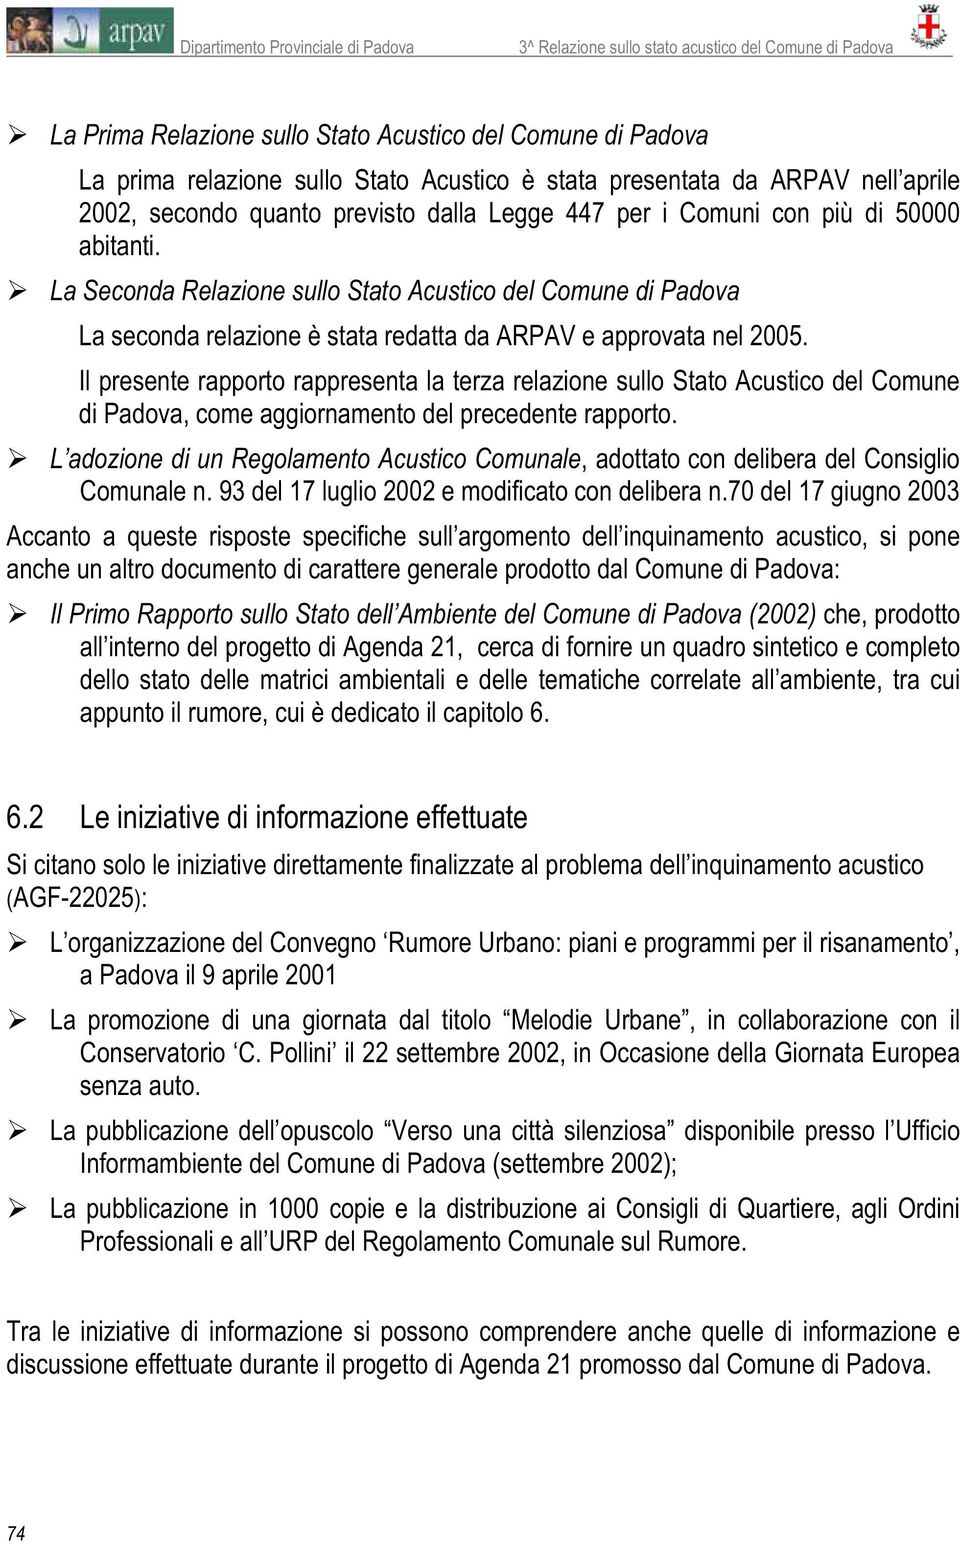 Il presente rapporto rappresenta la terza relazione sullo Stato Acustico del Comune di Padova, come aggiornamento del precedente rapporto.